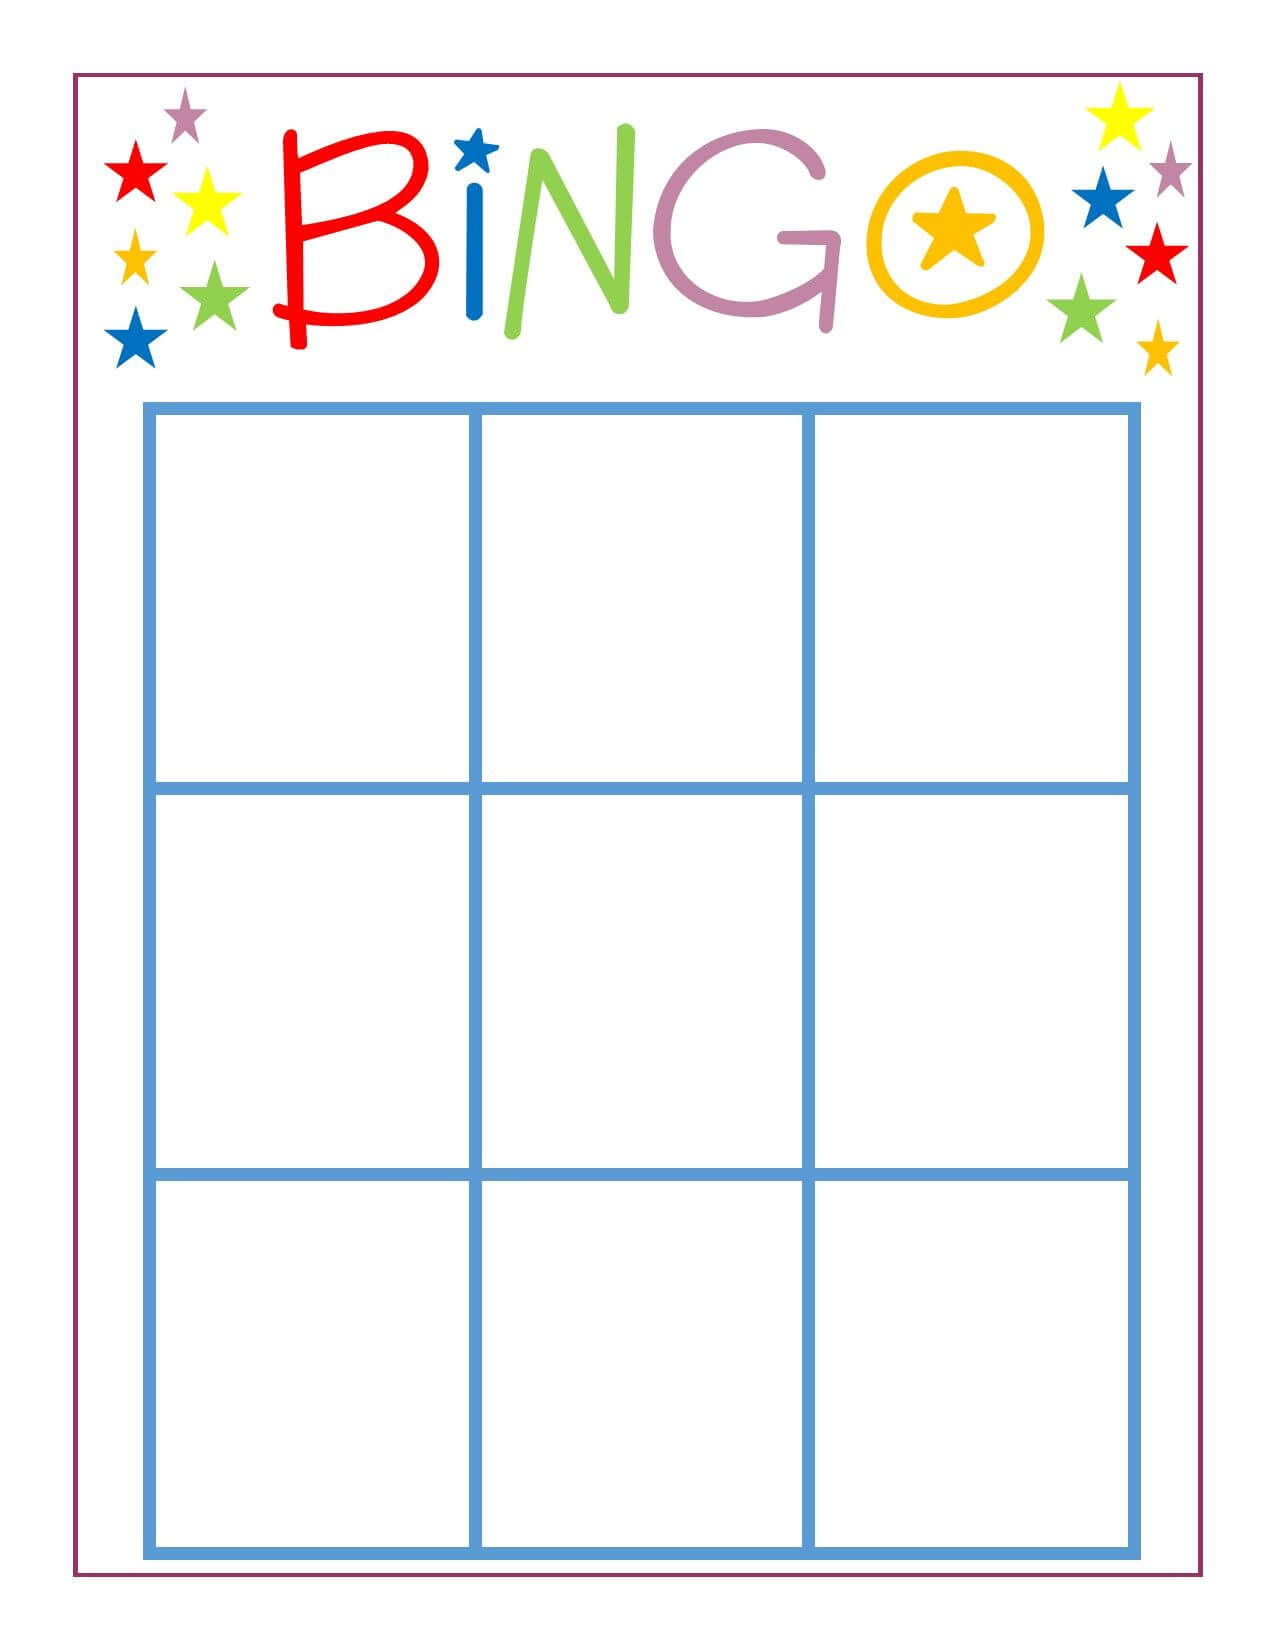 family-game-night-bingo-bingo-card-template-blank-bingo-inside-bingo-card-template-word